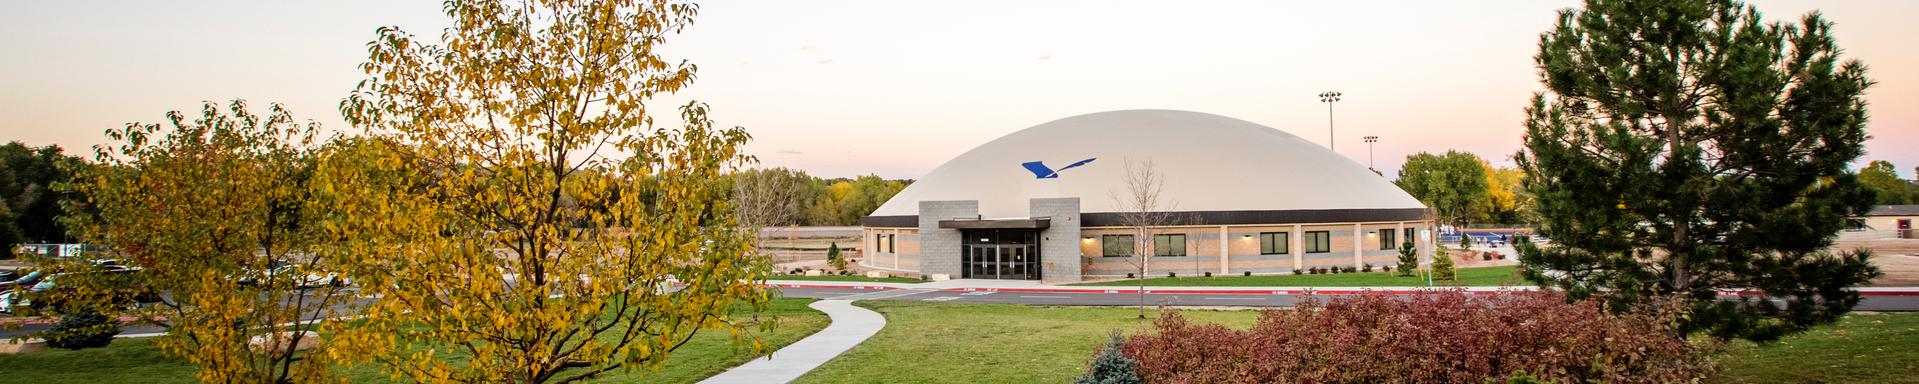 The Vanguard School in Colorado Springs, Colorado.